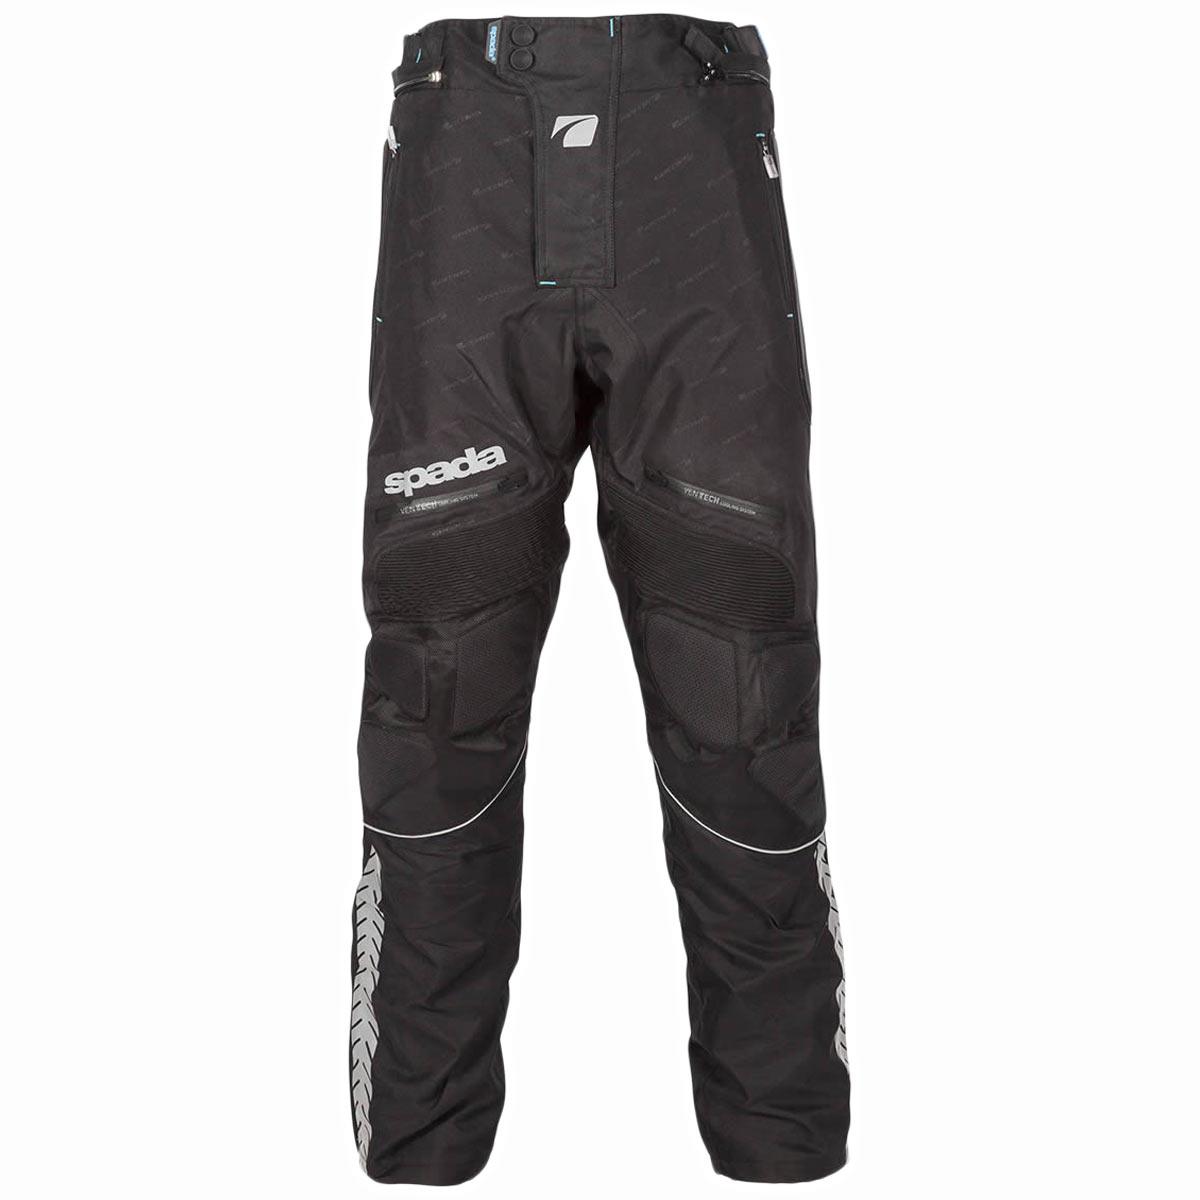 Mens Nightclub Genuine Black Leather Motorcycle Trousers Pants  Mready